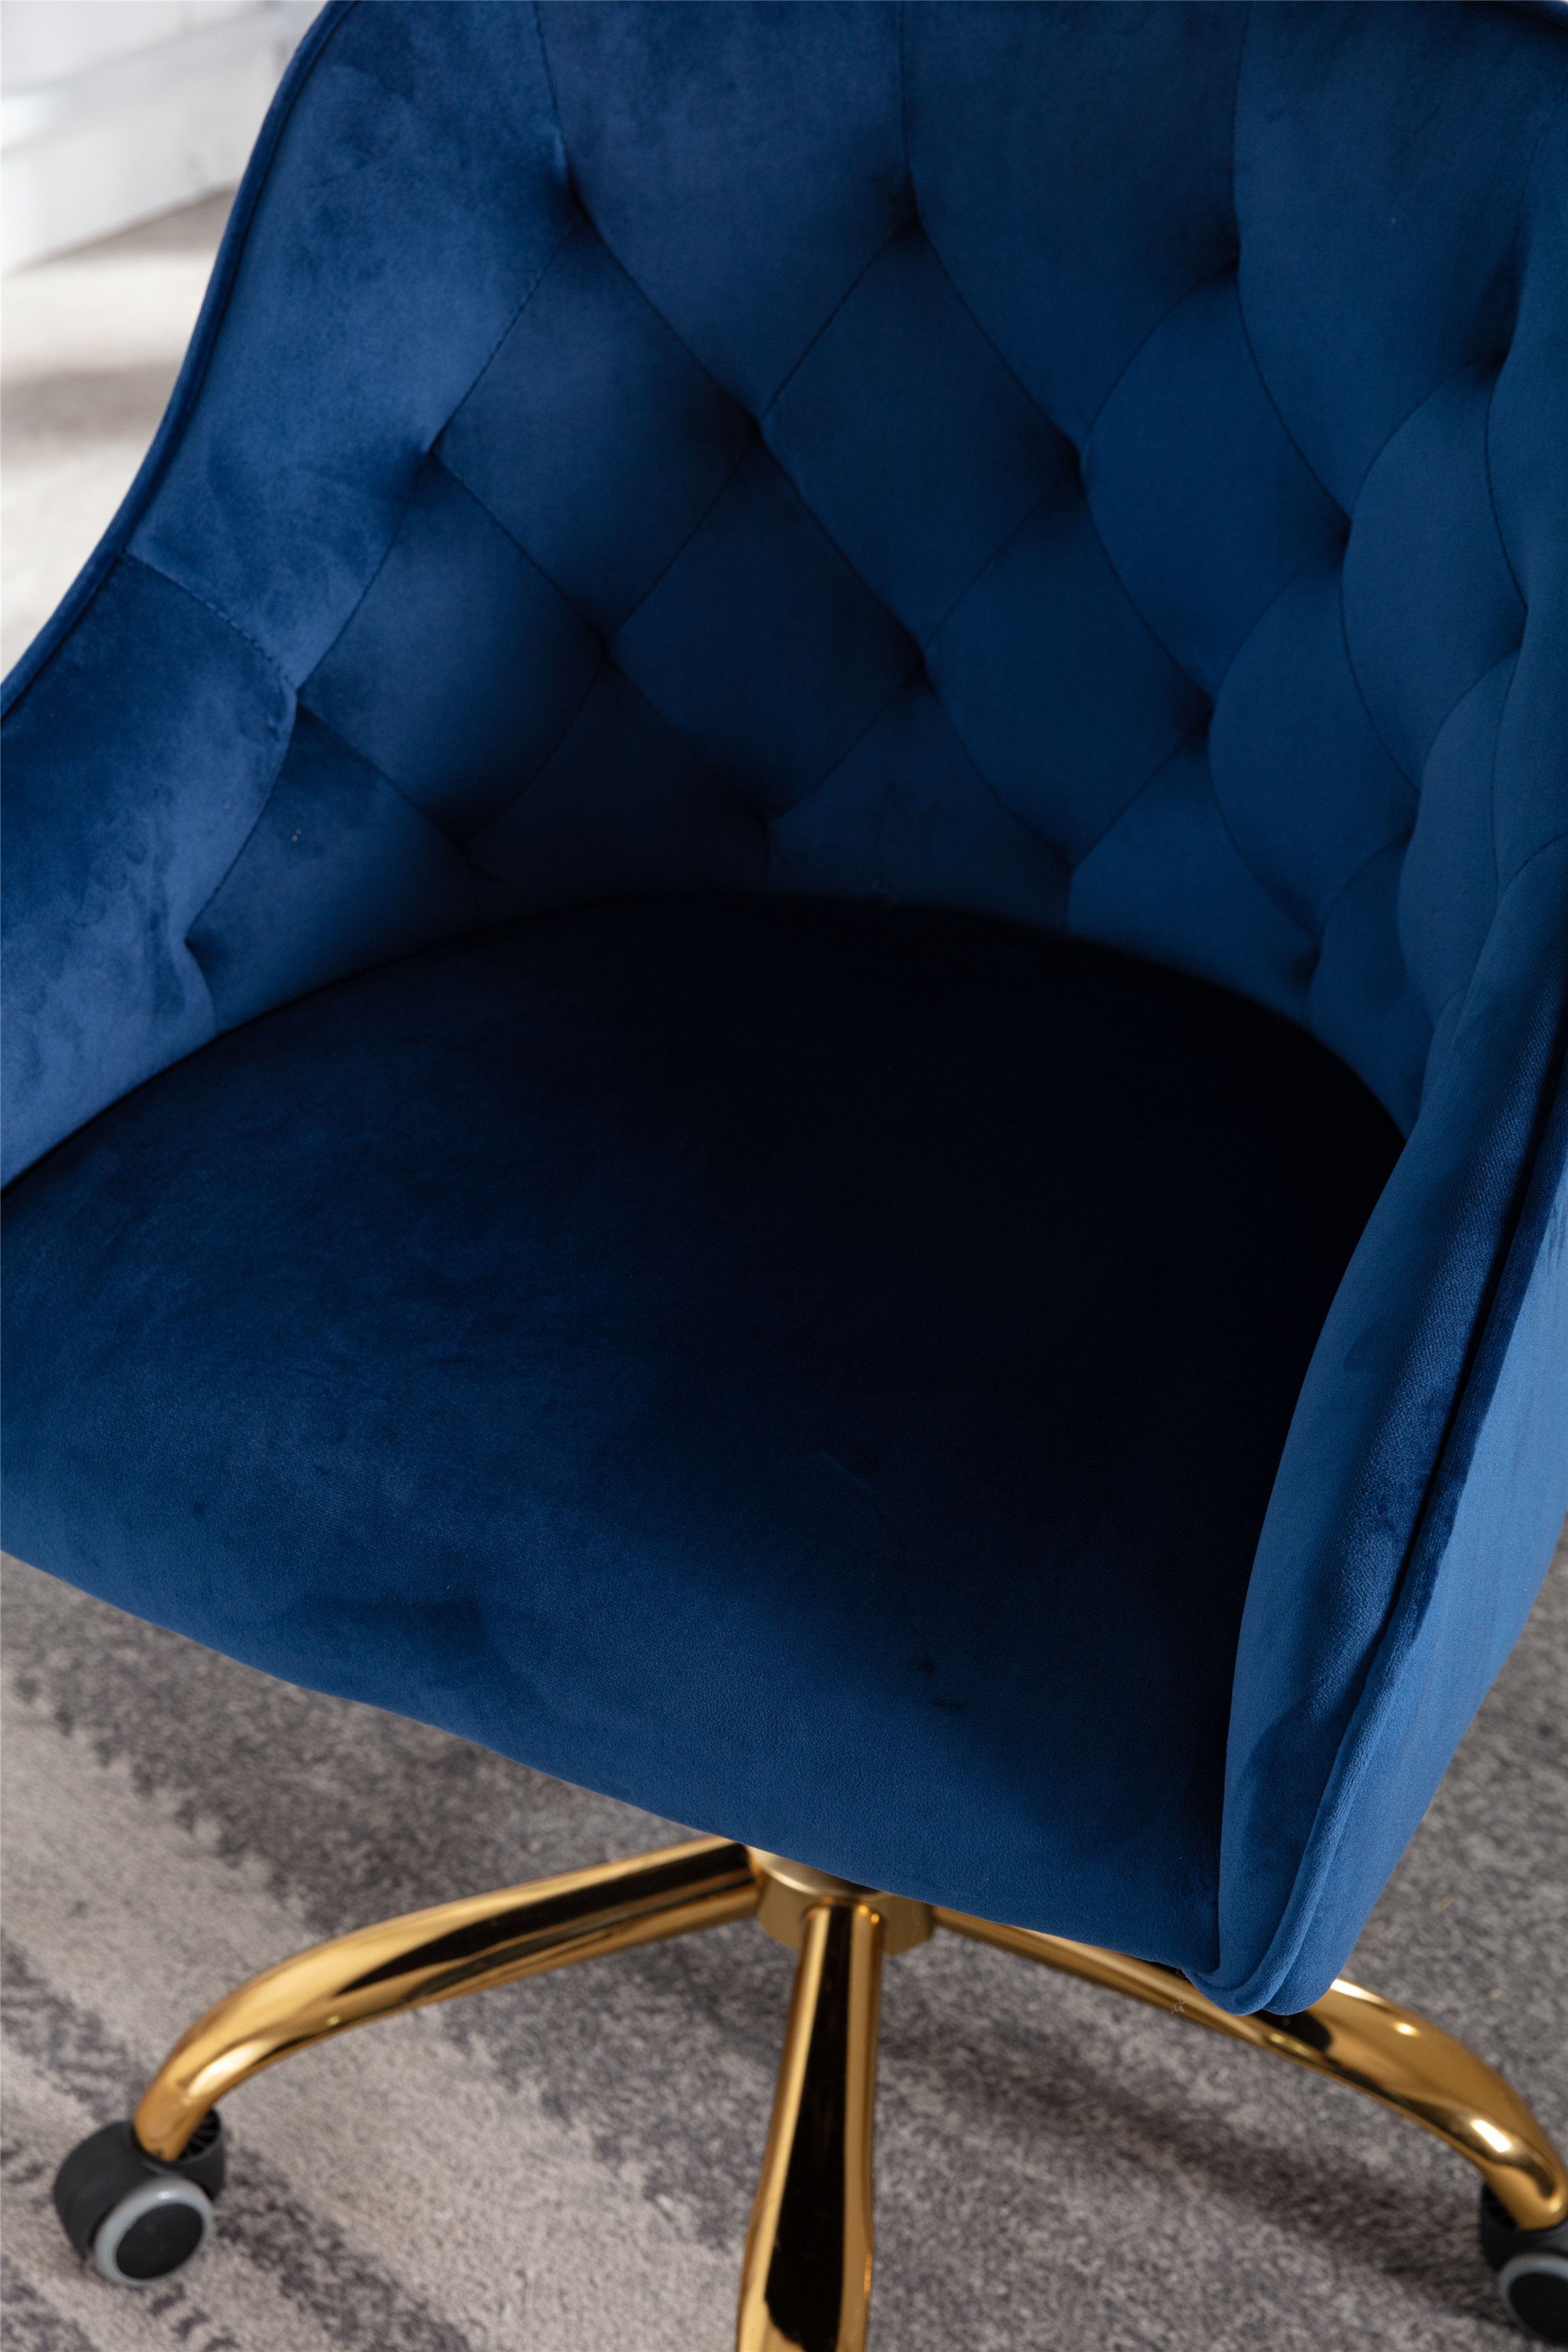 Blau drehbar Drehstuhl Samt Odikalo Bürostuhl Schminkstuhl mehrerer Farbe Schreibtischstuhl